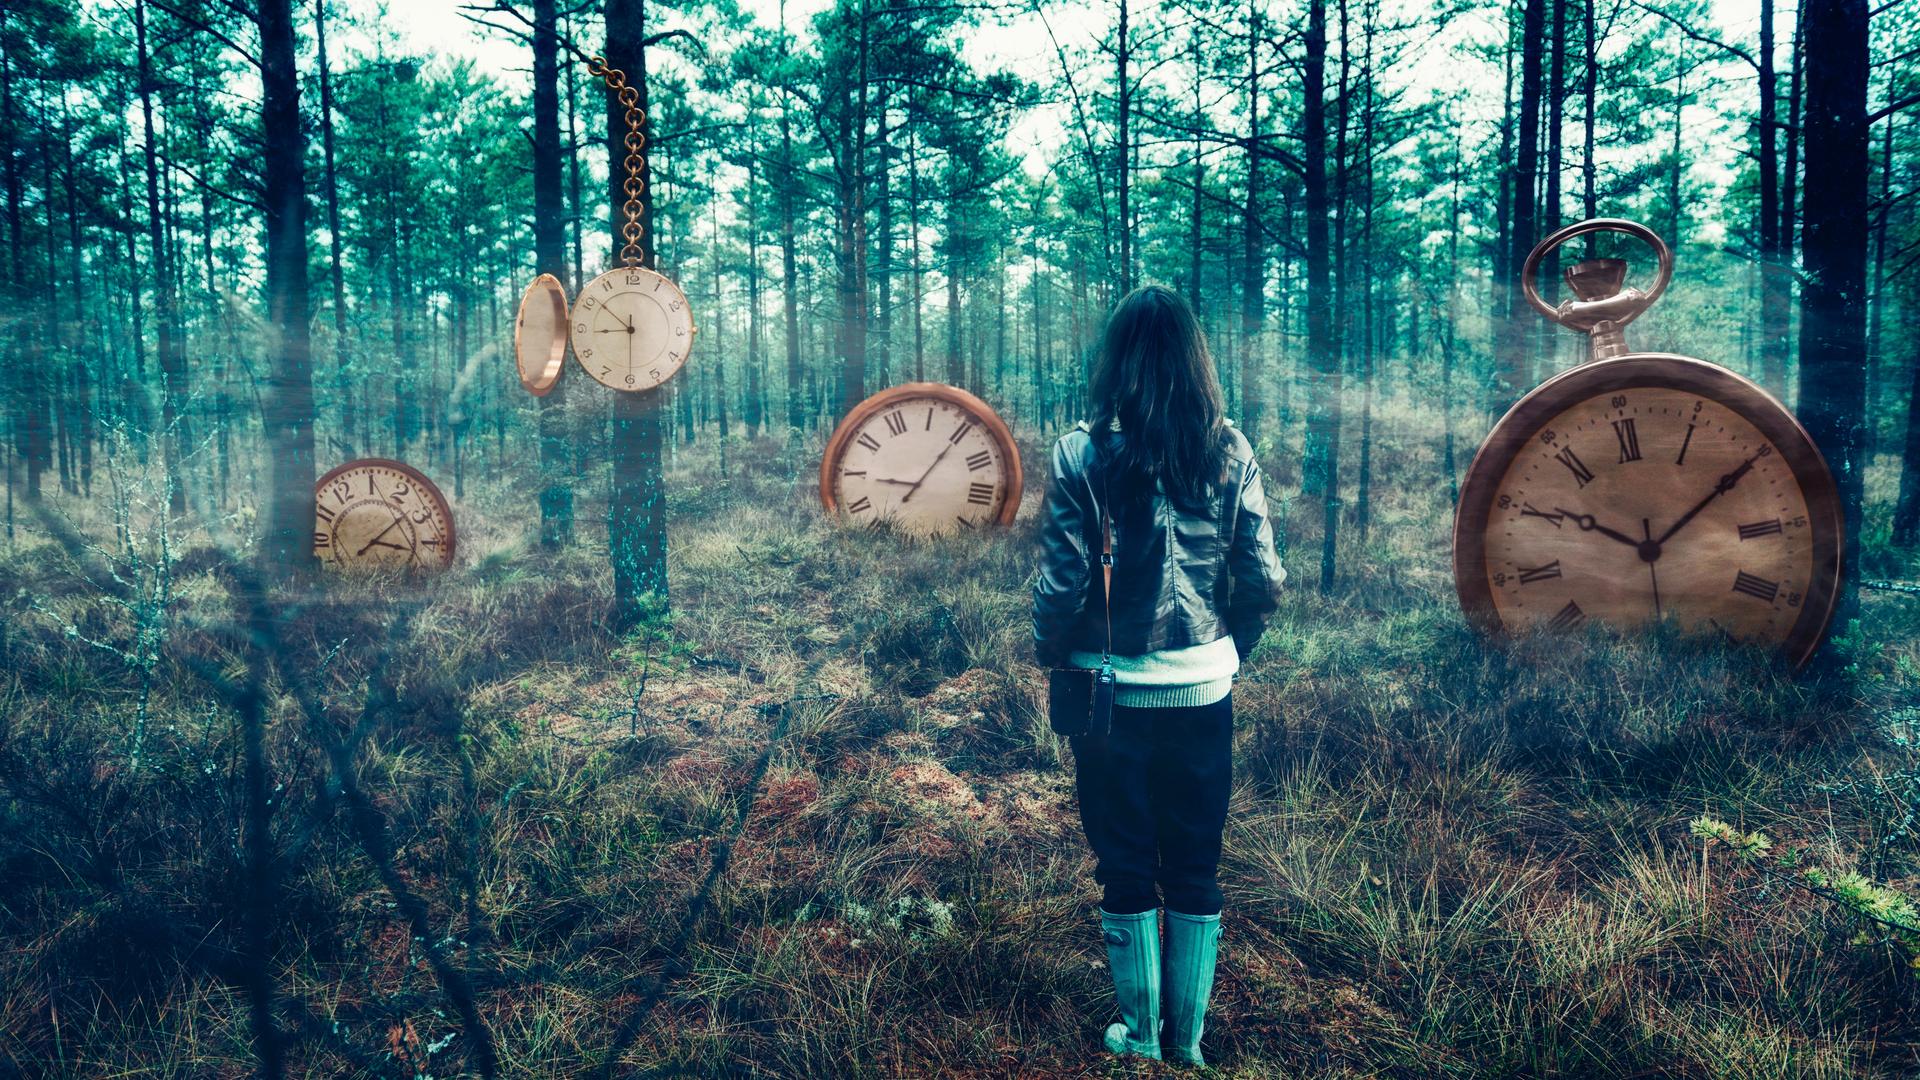 Eine Person steht mit dem Rücken zur Kamera in einem nebeligen Wald. Im Wald sind an den Bäumen und im Boden Uhren eingelassen.